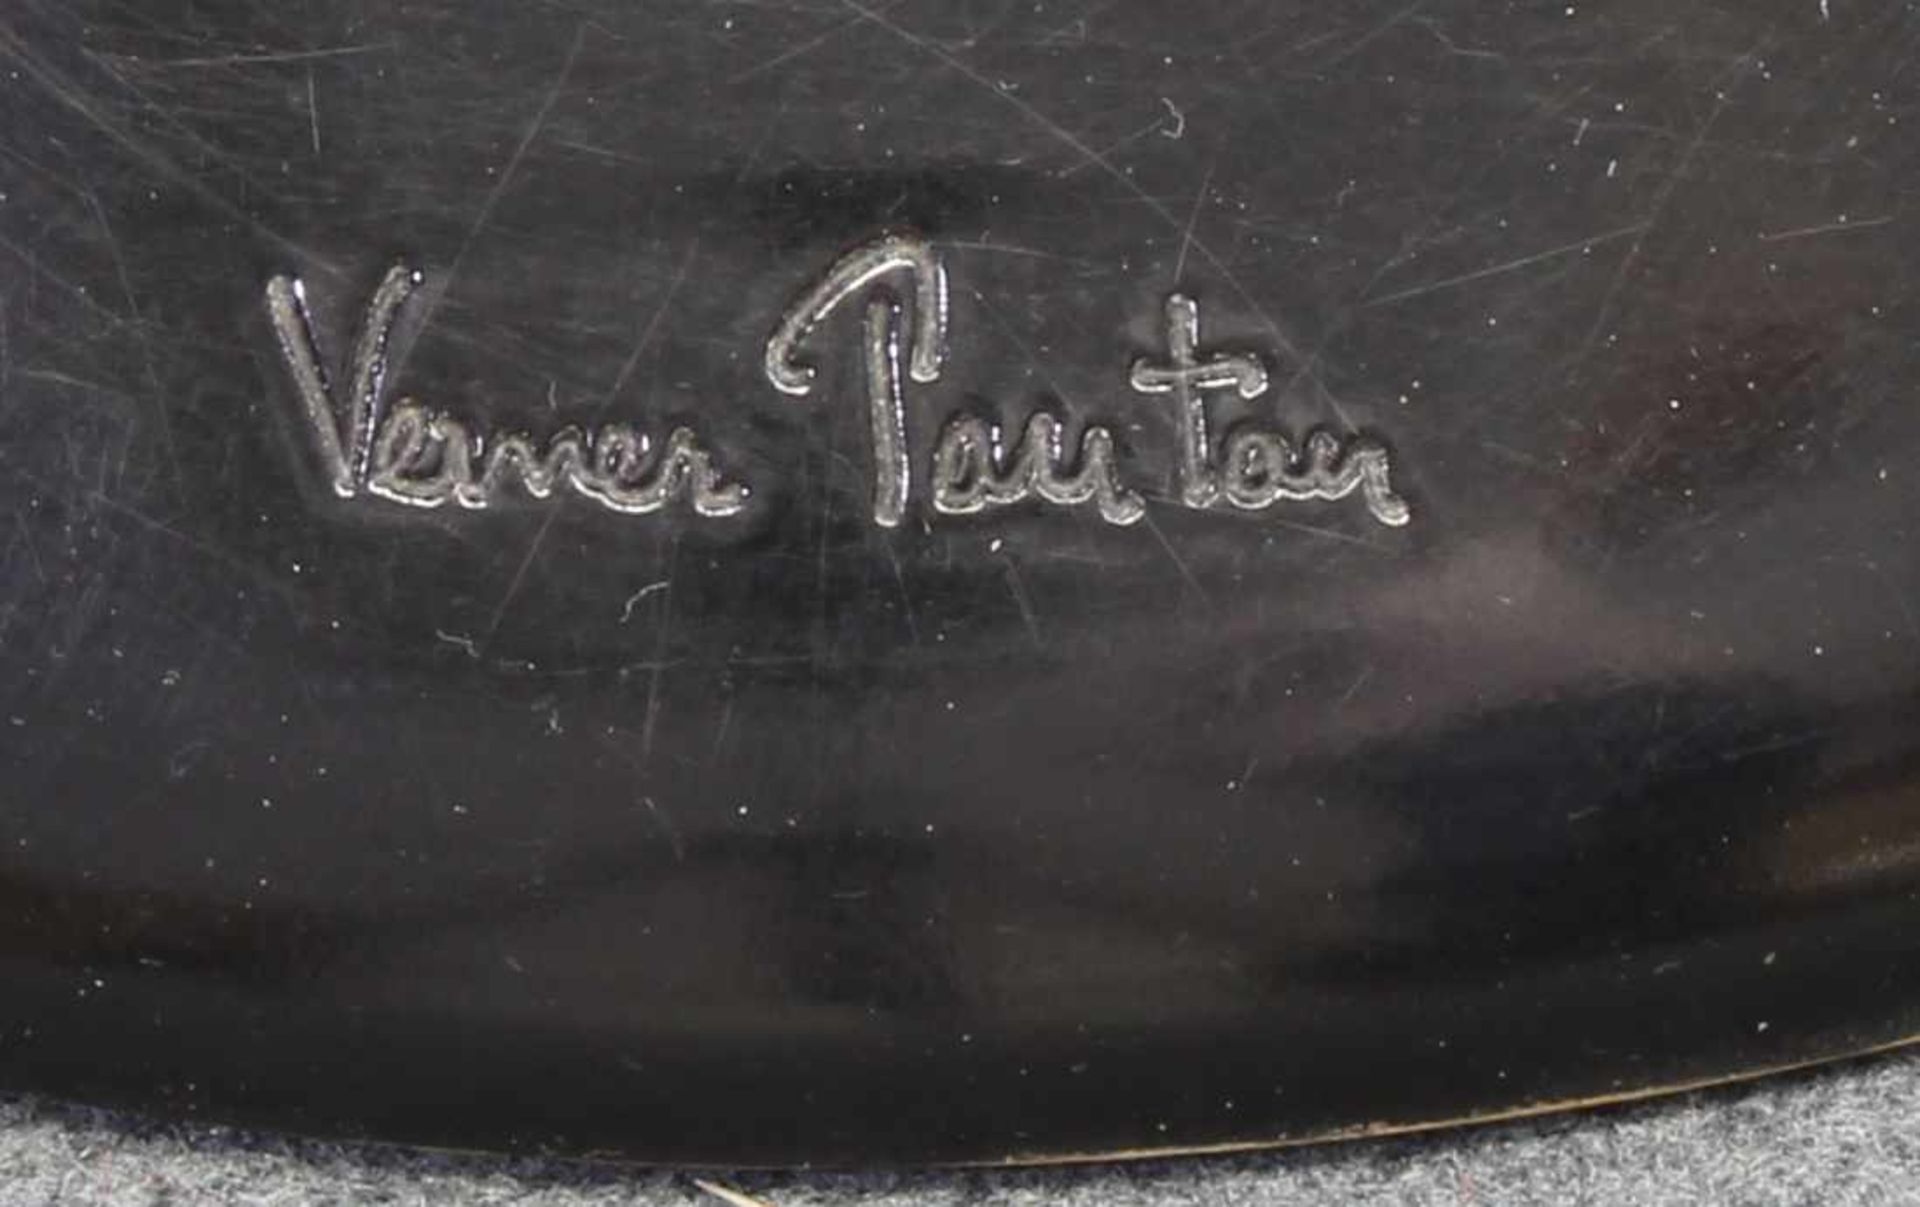 "Panton Chair", schwarzer Baydur Kunststoff, Hochglanz lackiert, im Fuß gemarkt 'Verner Panton', - Bild 3 aus 3